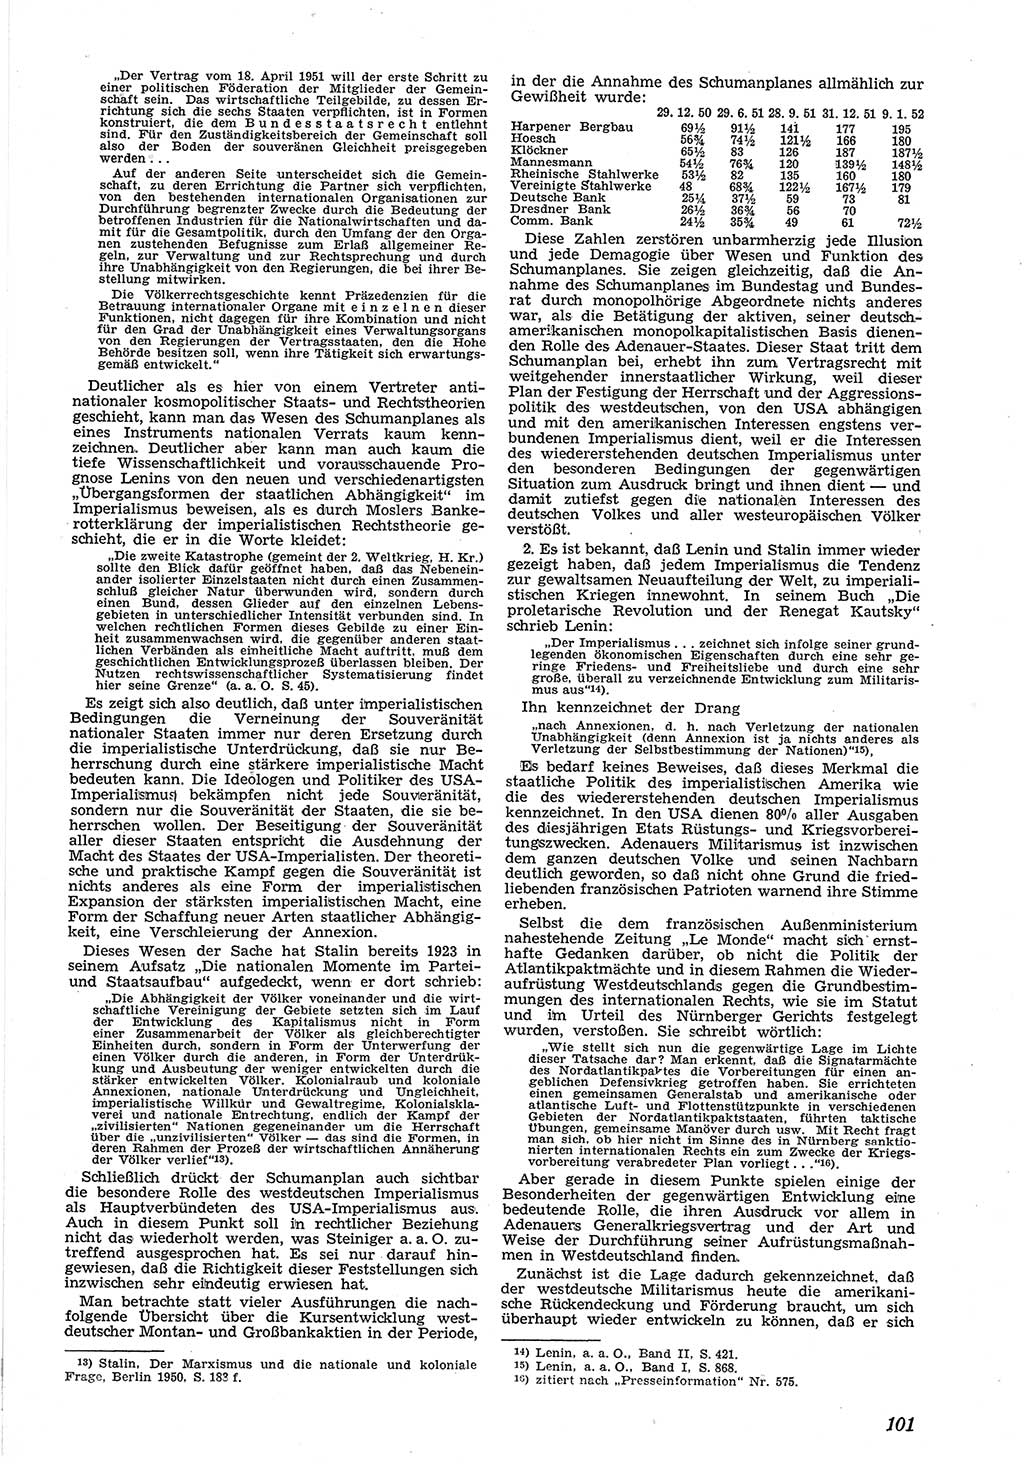 Neue Justiz (NJ), Zeitschrift für Recht und Rechtswissenschaft [Deutsche Demokratische Republik (DDR)], 6. Jahrgang 1952, Seite 101 (NJ DDR 1952, S. 101)